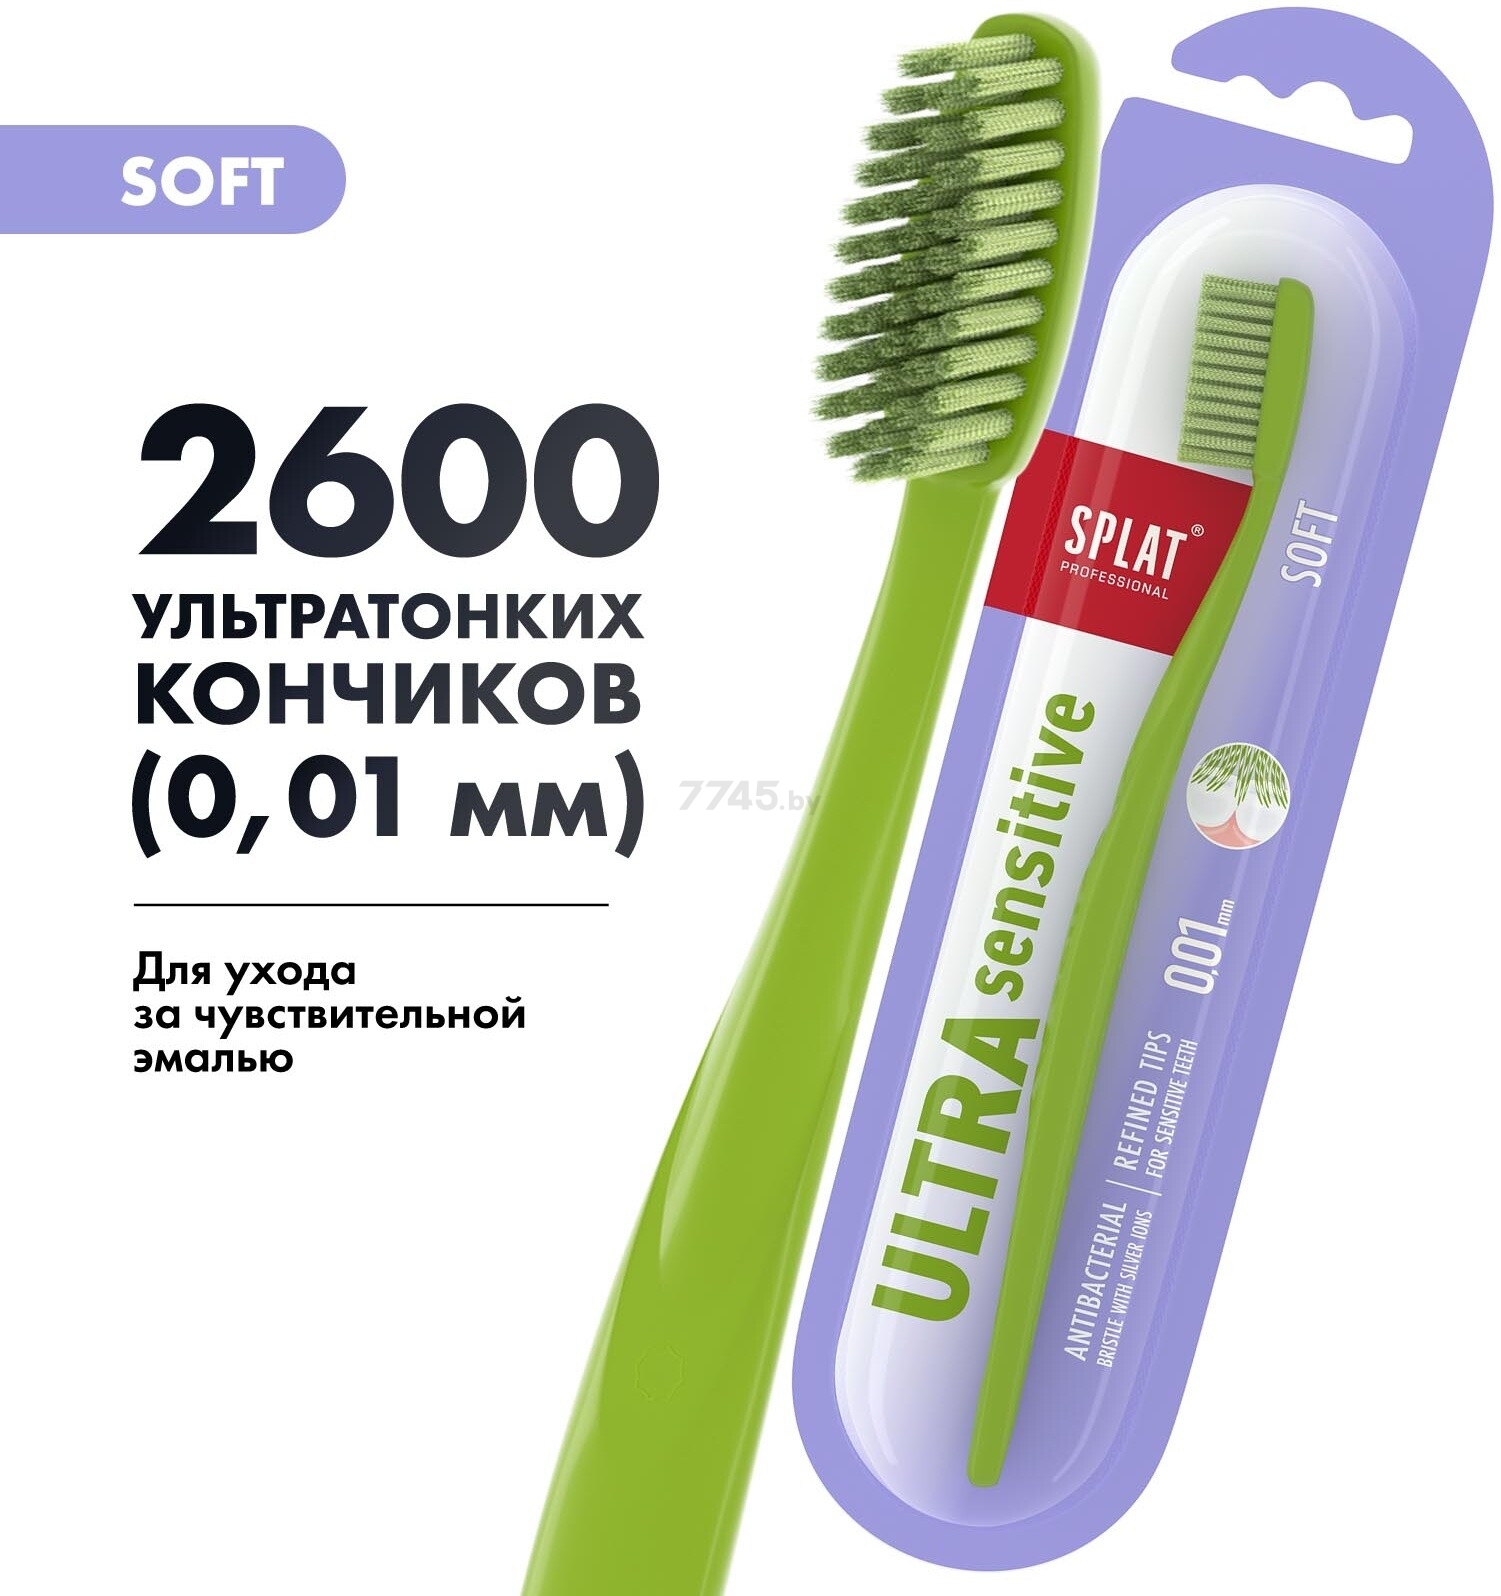 Зубная щетка SPLAT Professional Ultra Sensitive (4603014010025) - Фото 20